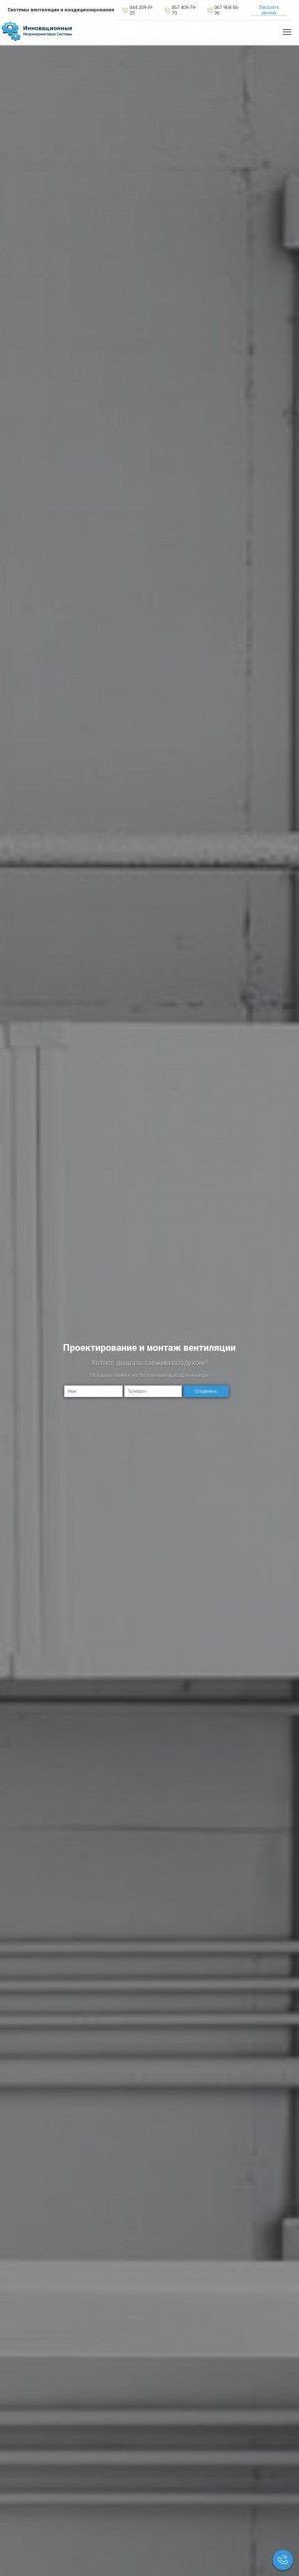 Предпросмотр для www.ugov.kiev.ua — Компания Инновационные инжиниринговые системы